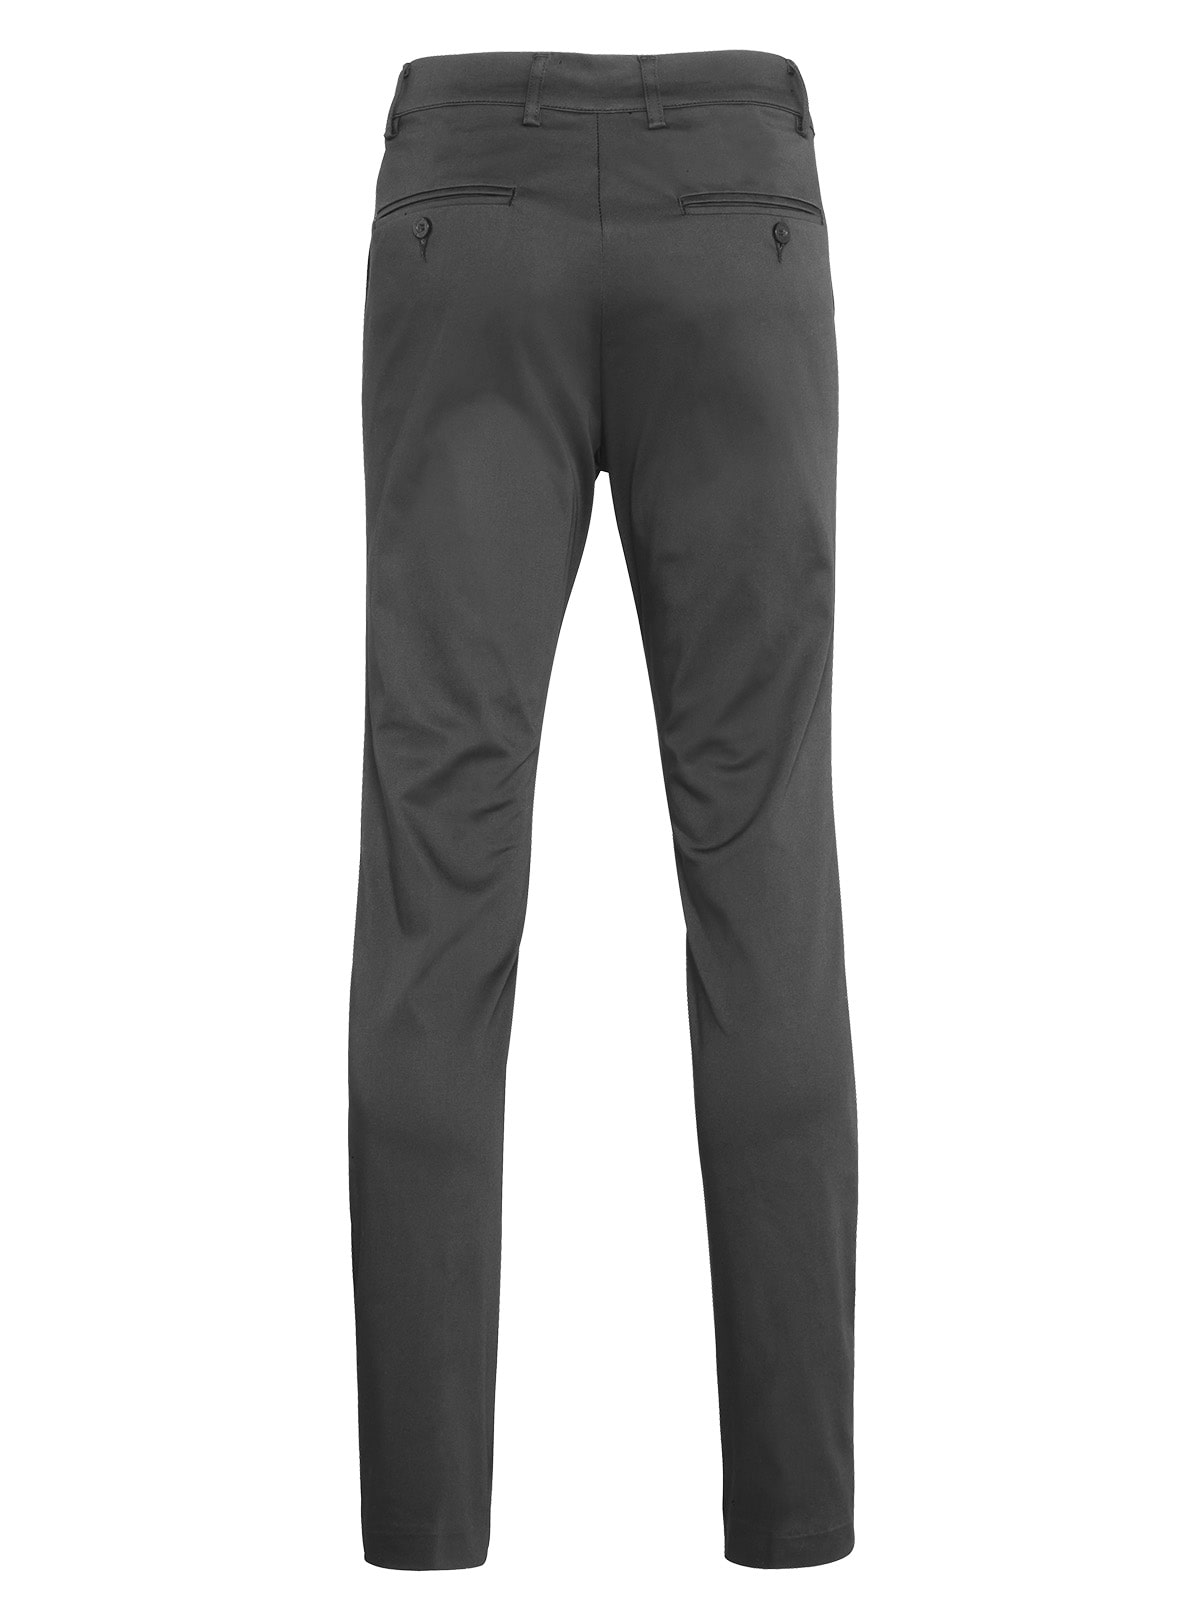 Pantalon Empresarial color gris hacia la espalda